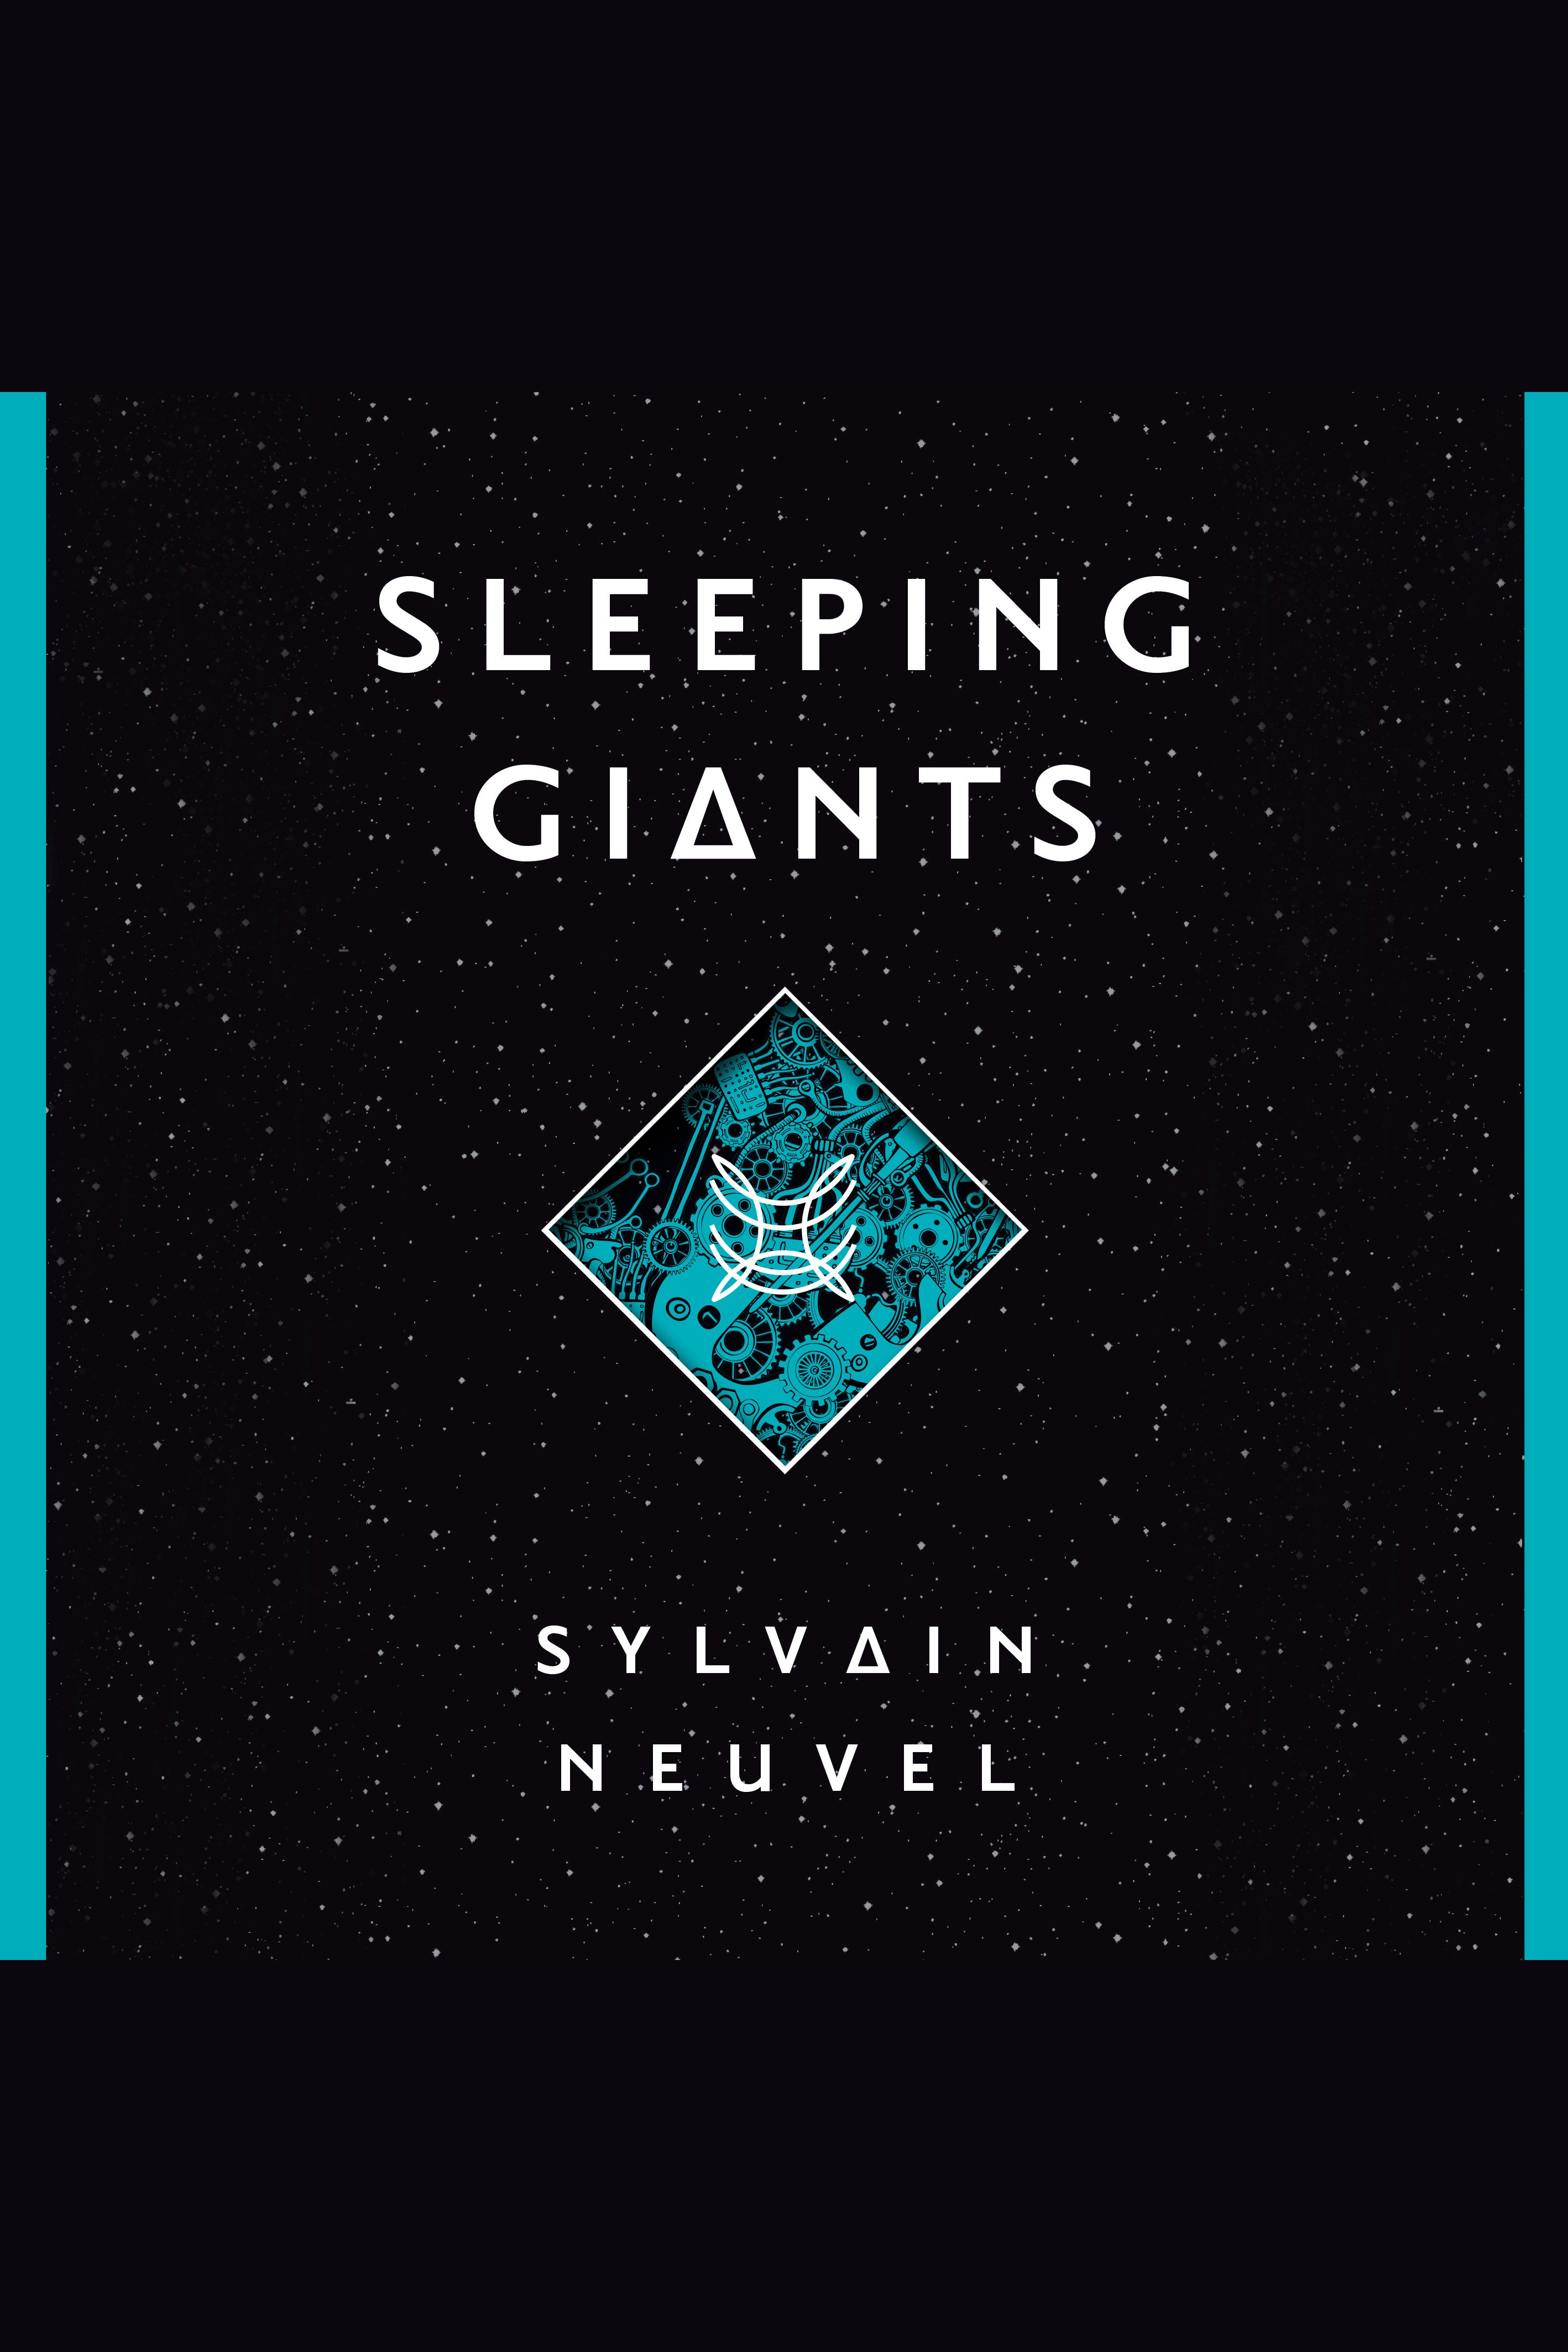 Sleeping giants cover image